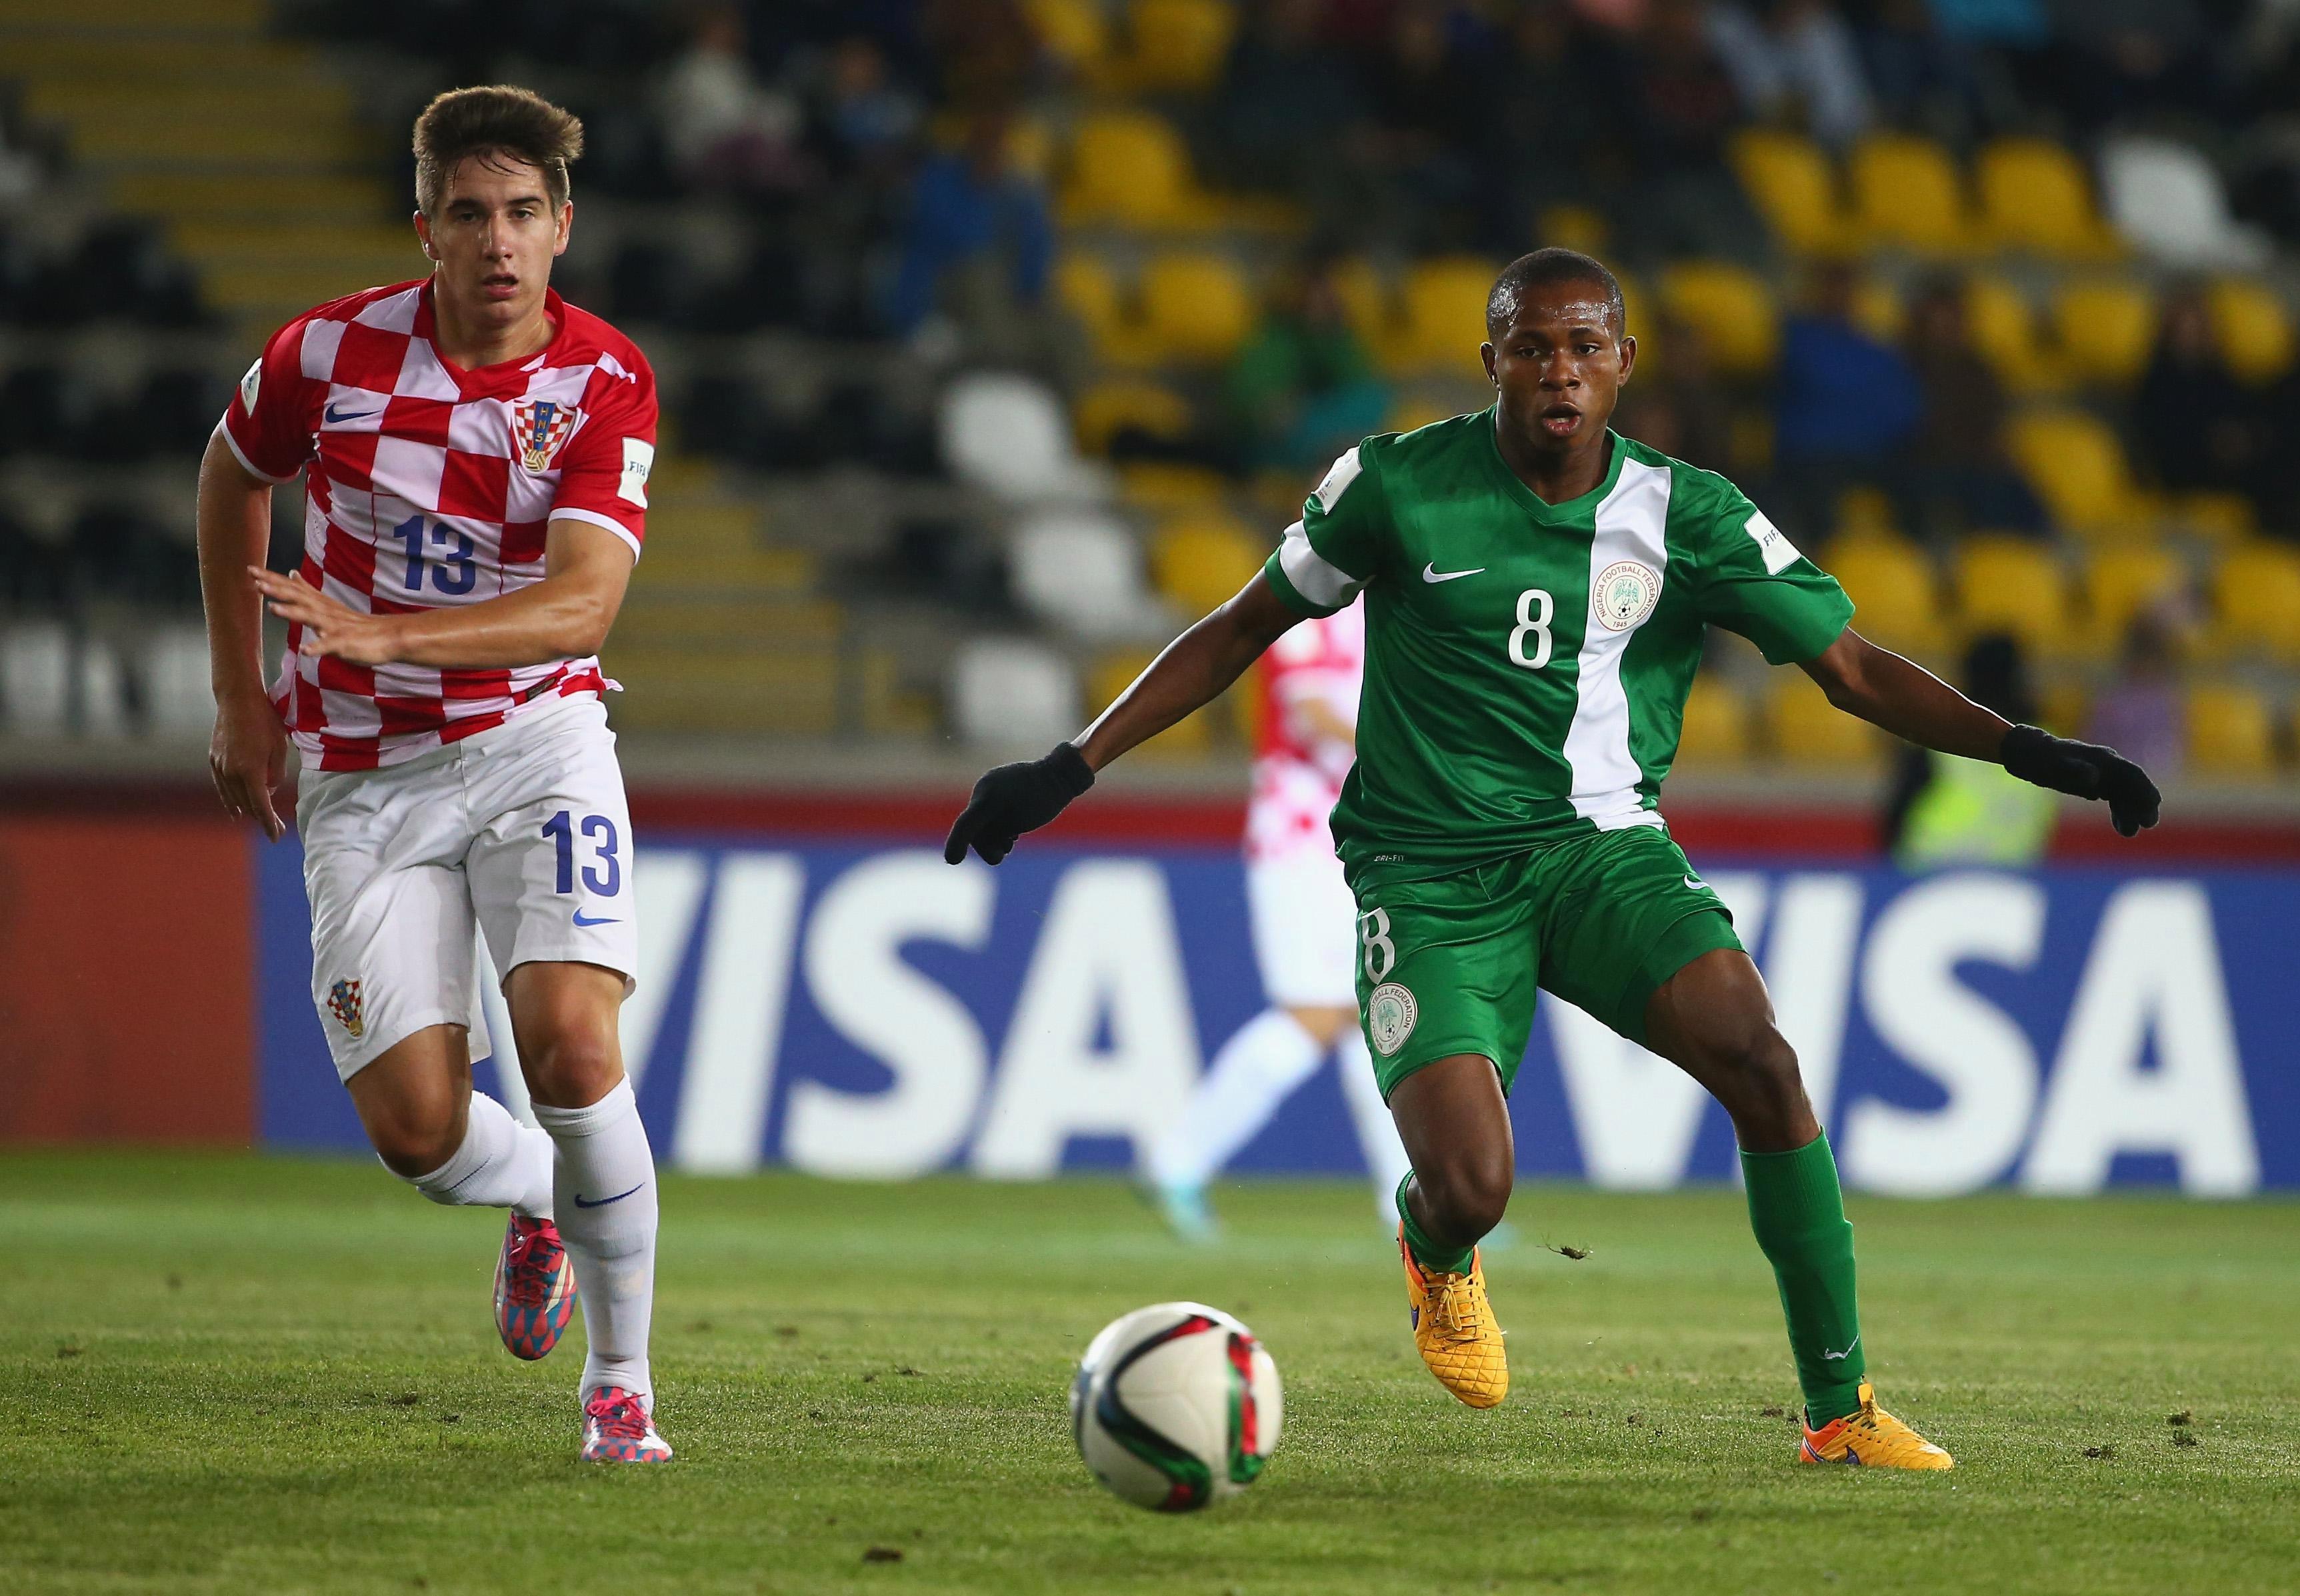 Nhận định bóng đá U17 Nigeria vs U17 Ecuador, 03h00 ngày 30/10: Khẳng định sức mạnh